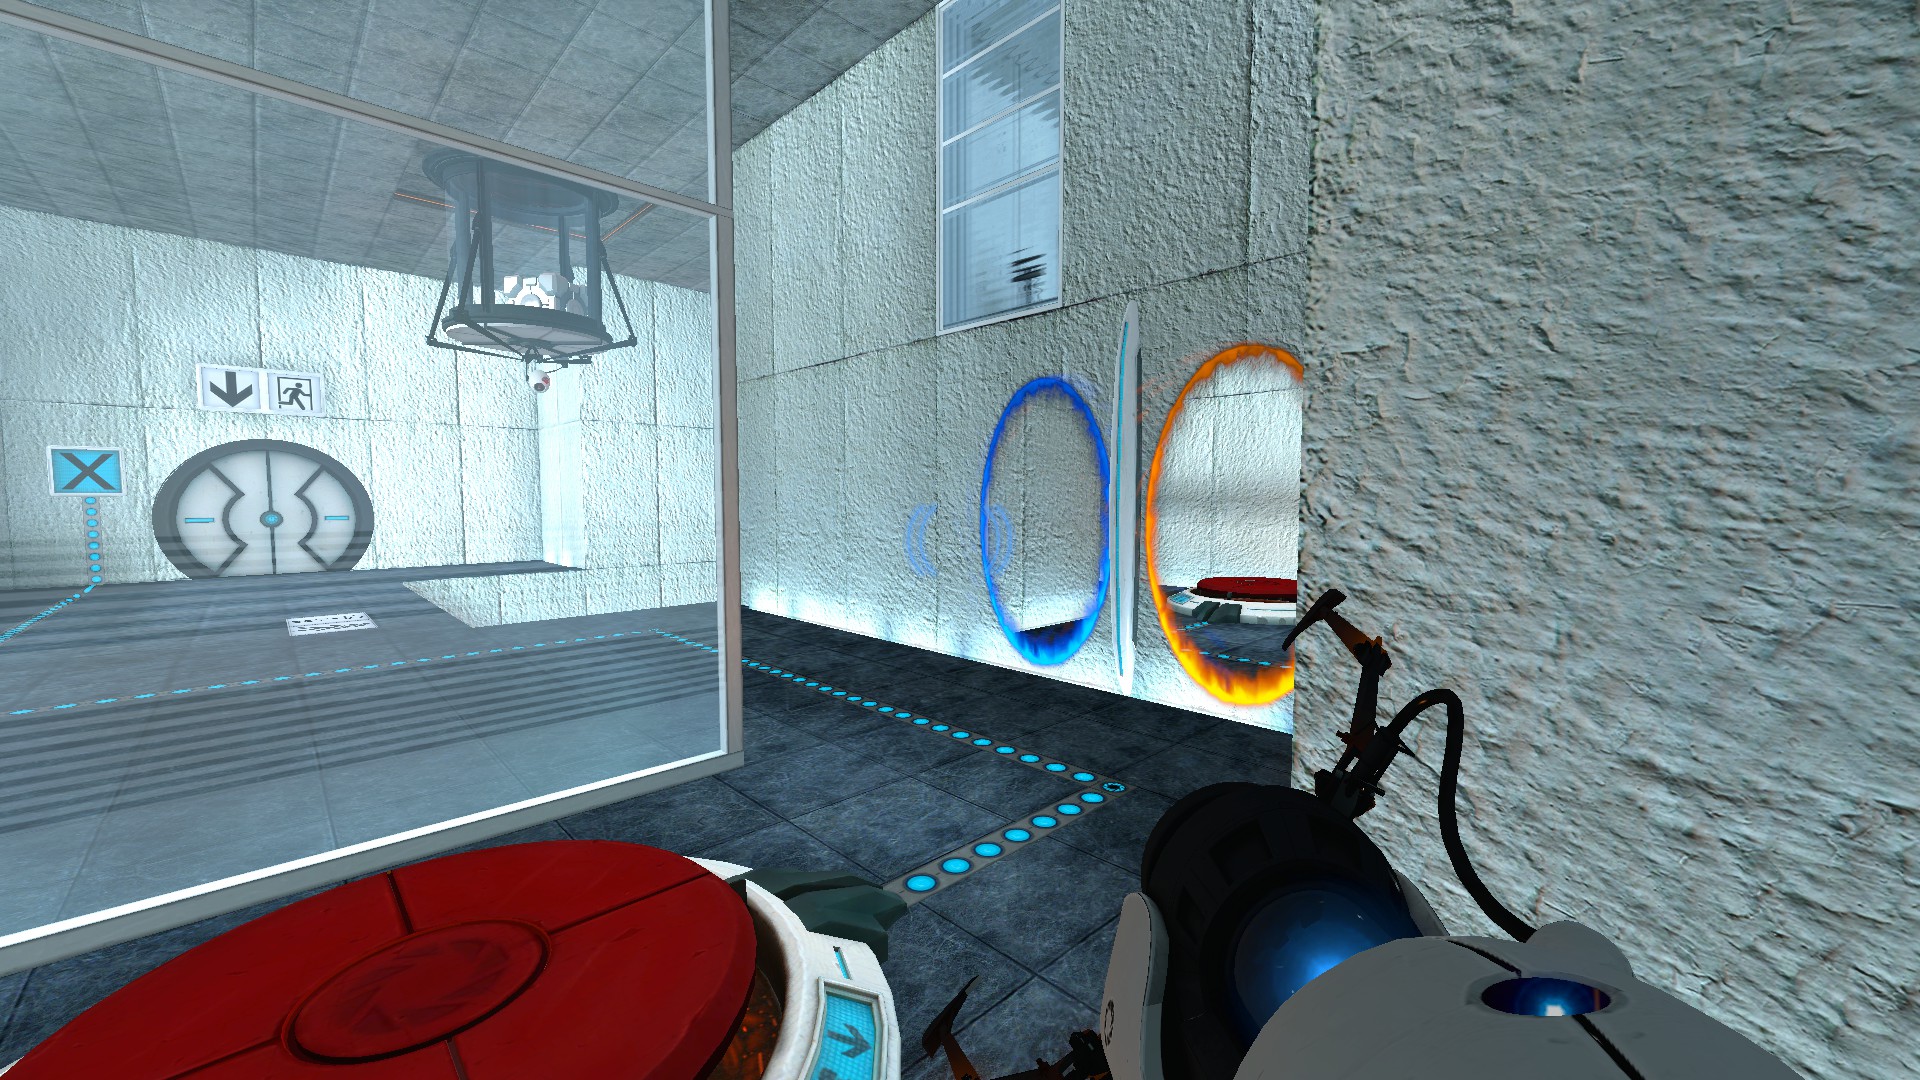 Включи в большой комнате 2. Portal 2 комната. Portal 1 и Portal 2. Portal 2 комната 01. Стена из портал 1.